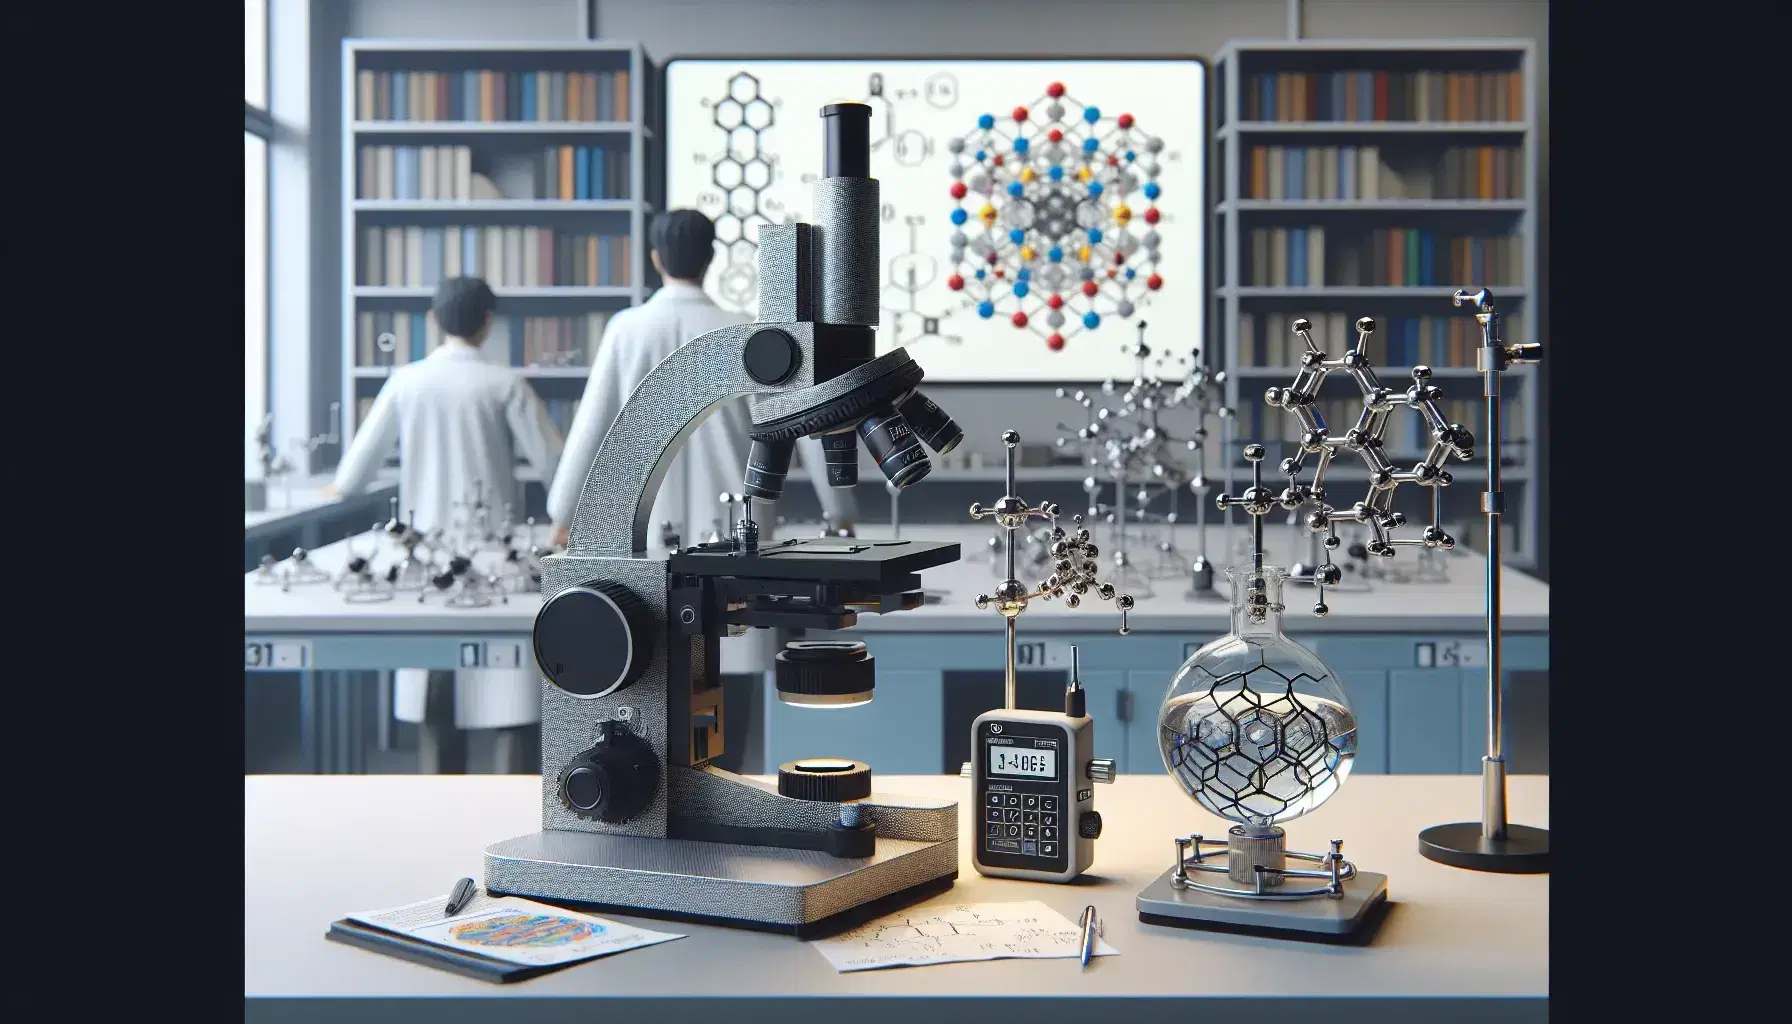 Laboratorio de física con mesa de trabajo, microscopio metálico, soporte universal con frasco de vidrio y cronómetro digital, persona analizando gráficos en computadora y estante con libros y modelo molecular.